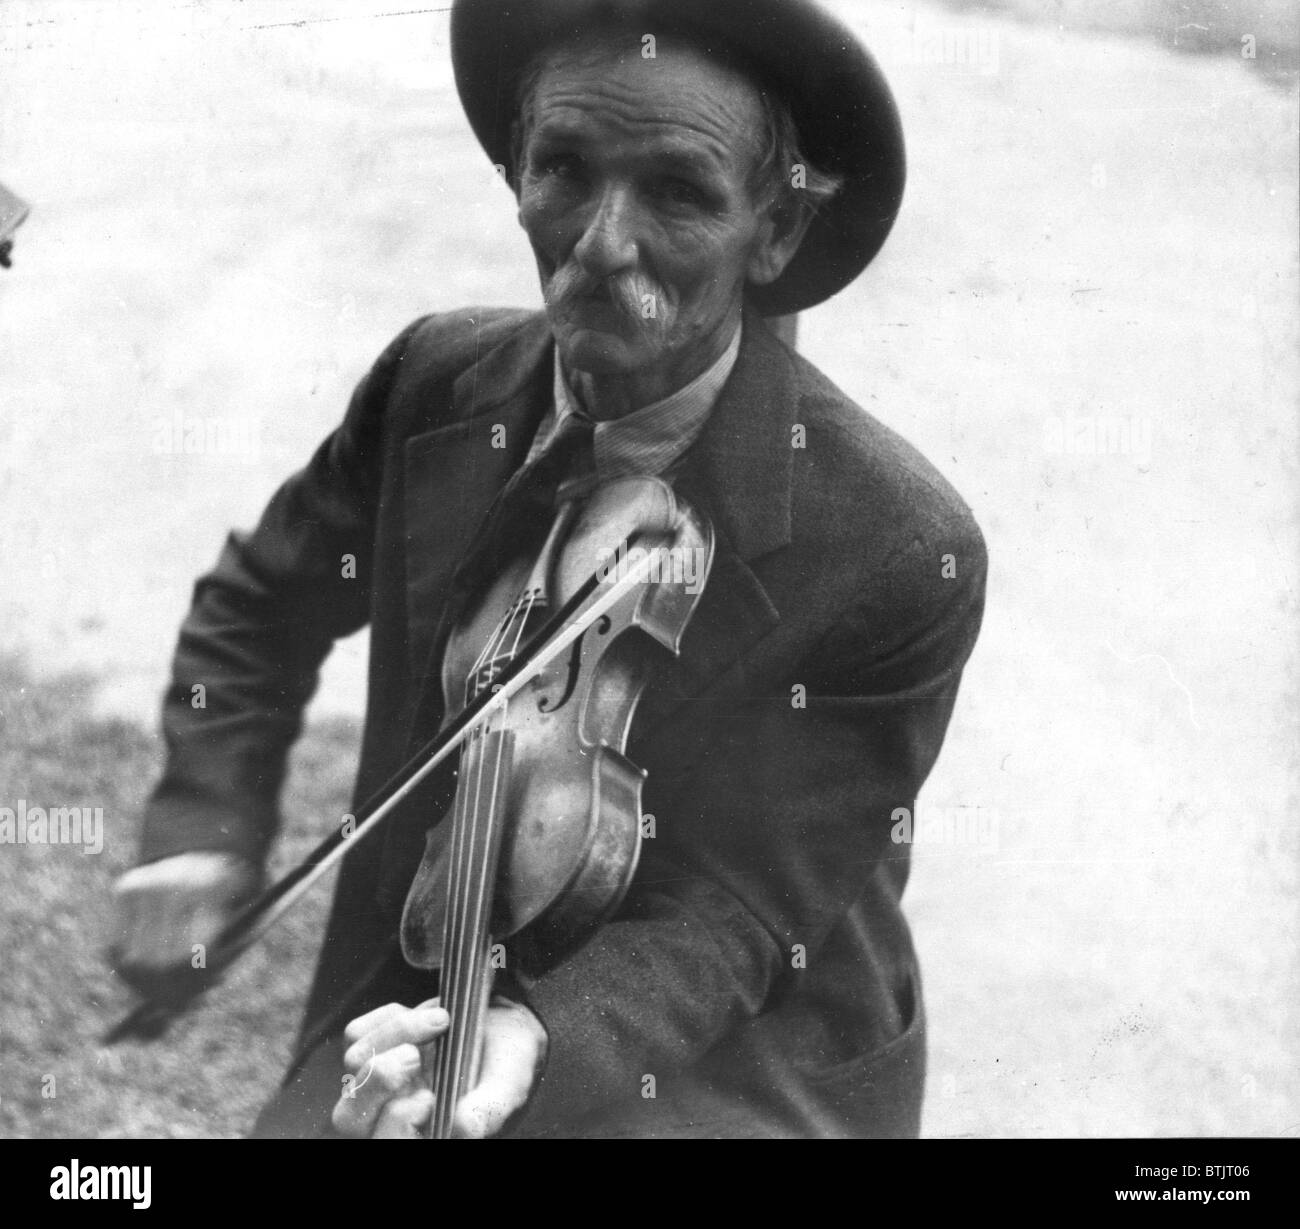 Fiddlin' Bill Henseley, mountain fiddler, photo de Ben Shahn, Asheville, Caroline du Nord, 1938. Banque D'Images